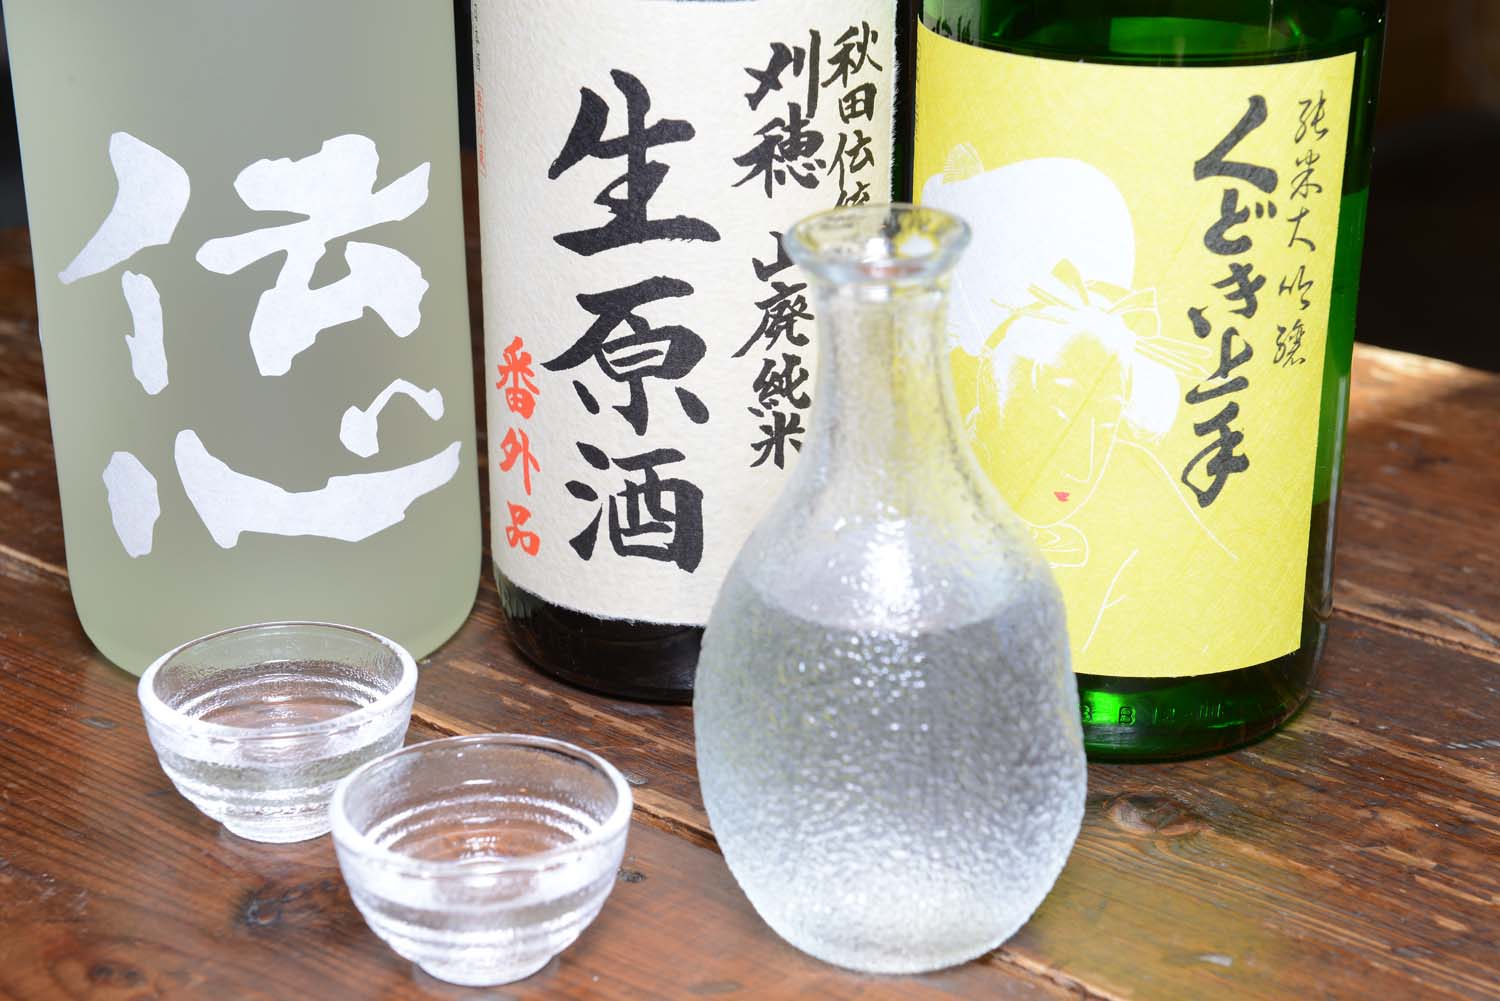 珍しい銘柄も多いので、どんな日本酒と出合えるかも楽しみ。